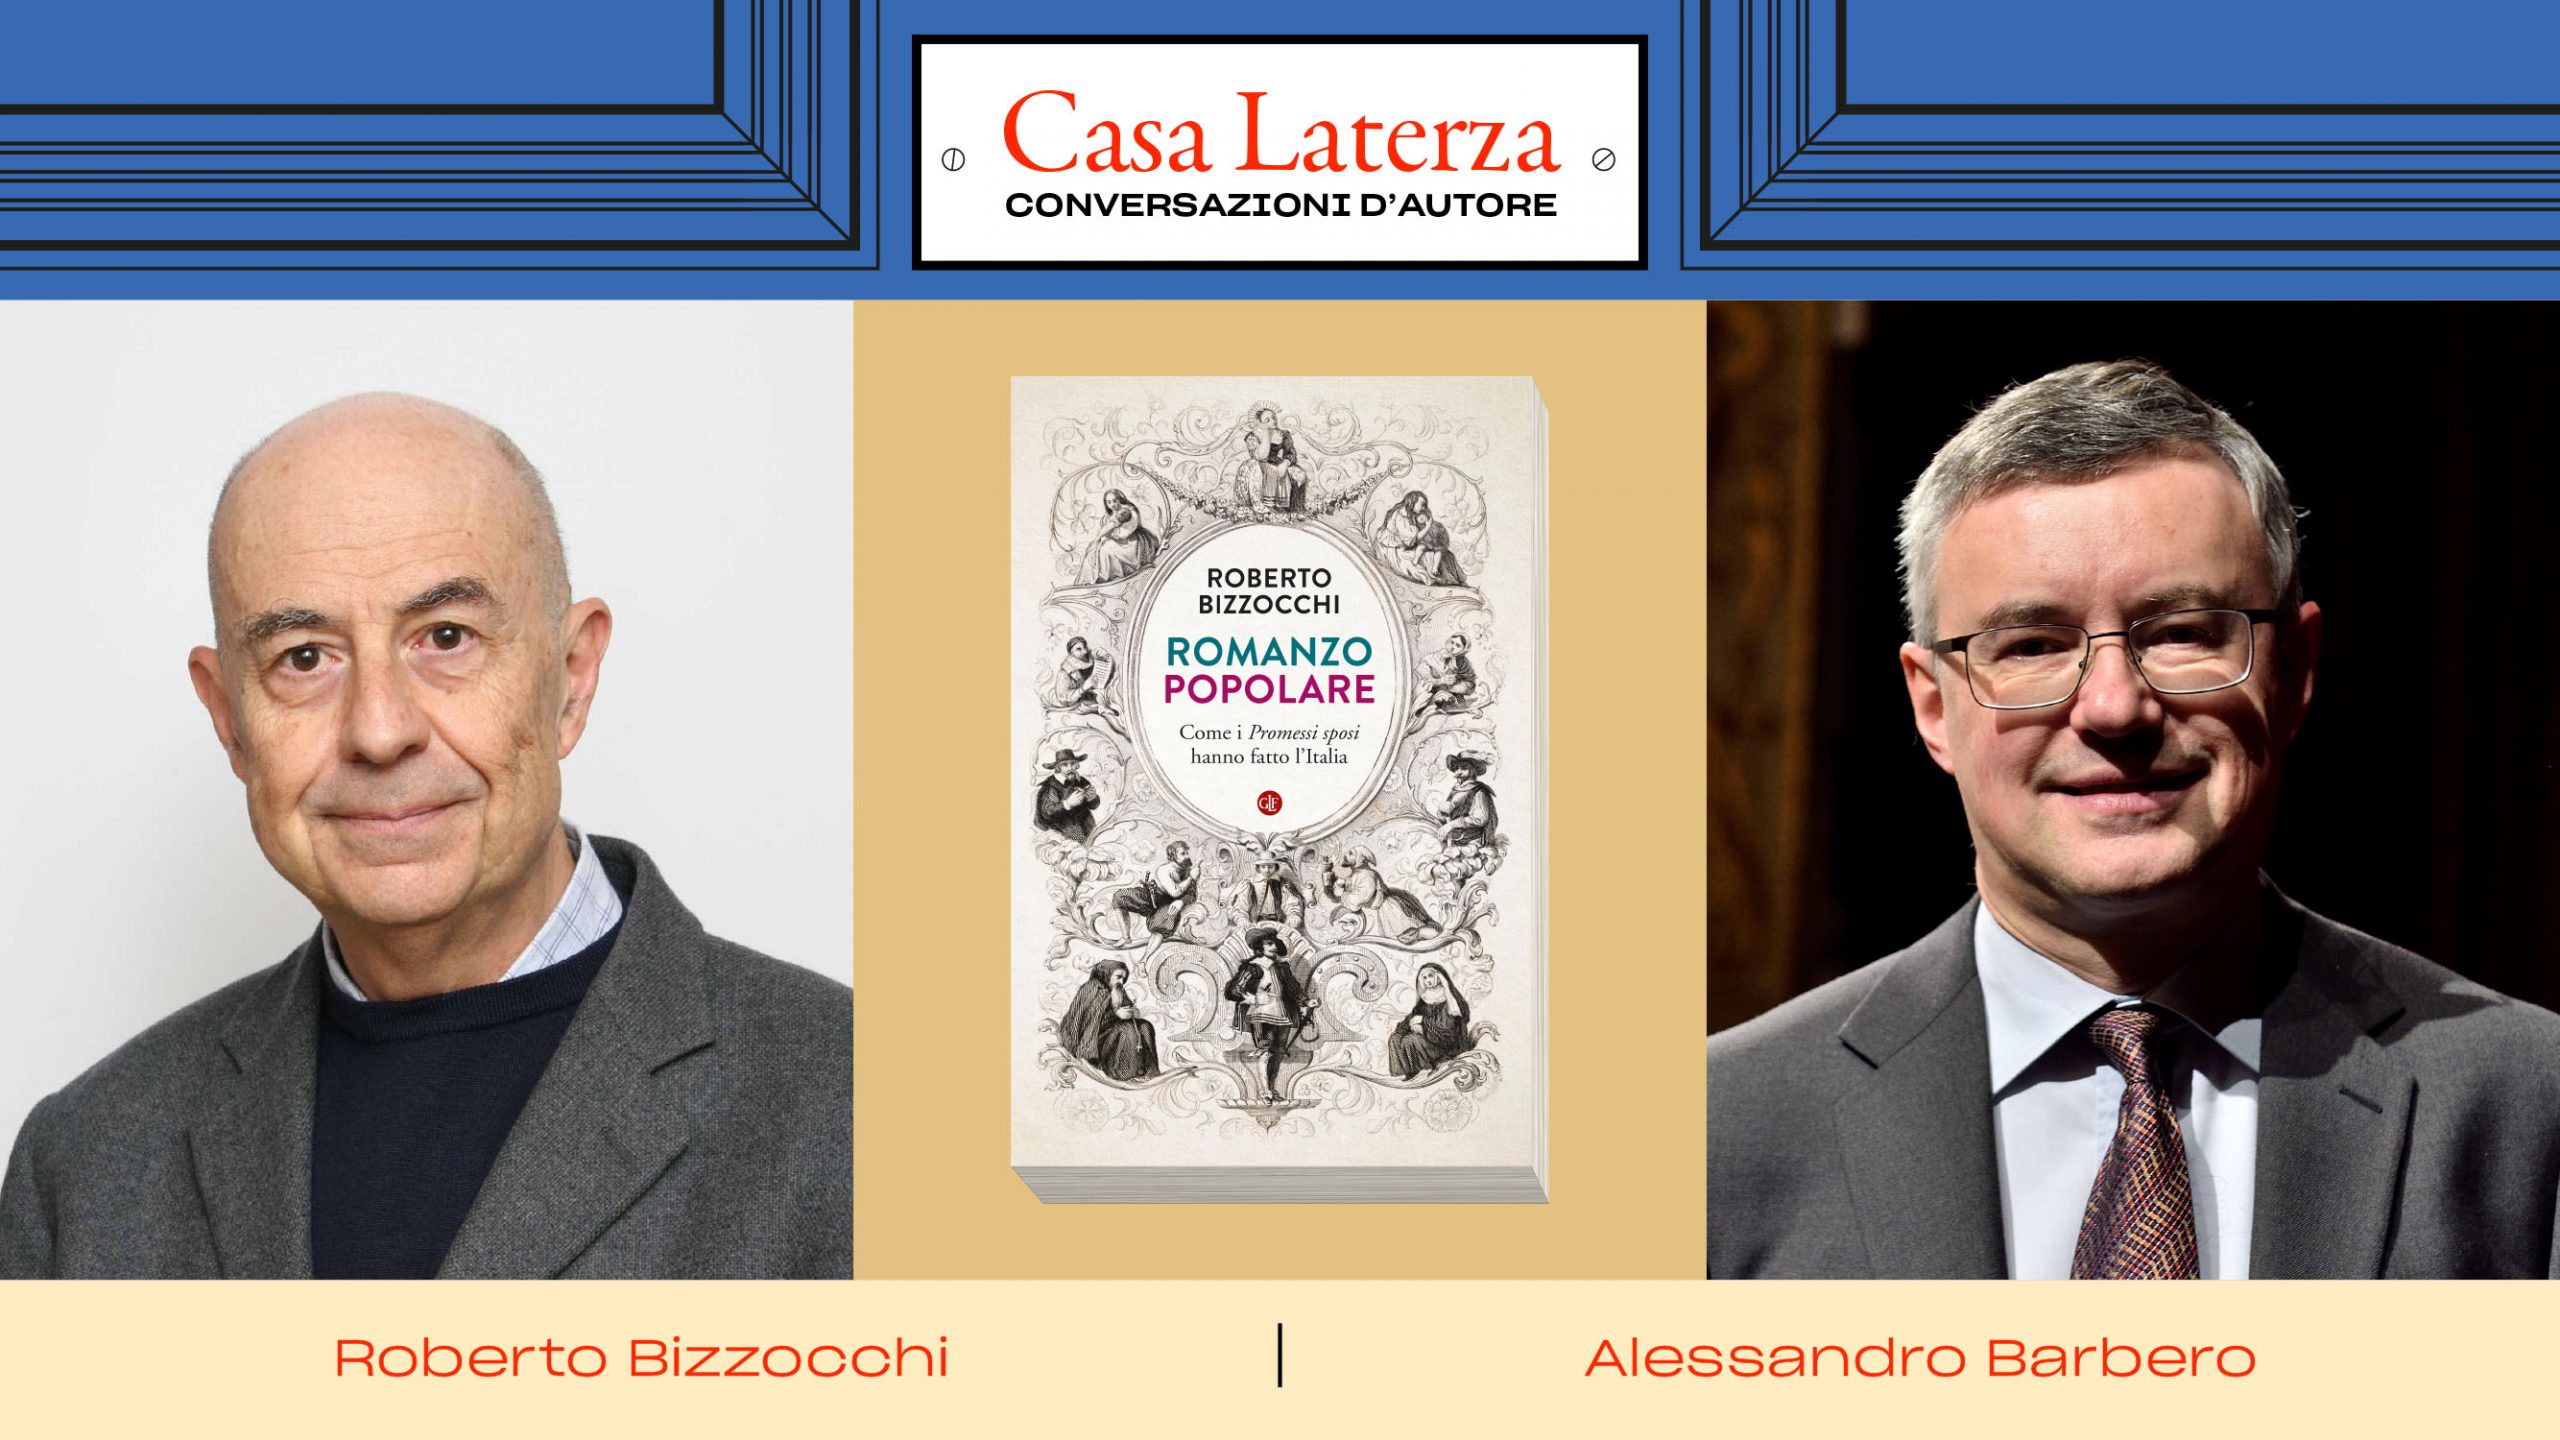 CasaLaterza: Roberto Bizzocchi in dialogo con Alessandro Barbero